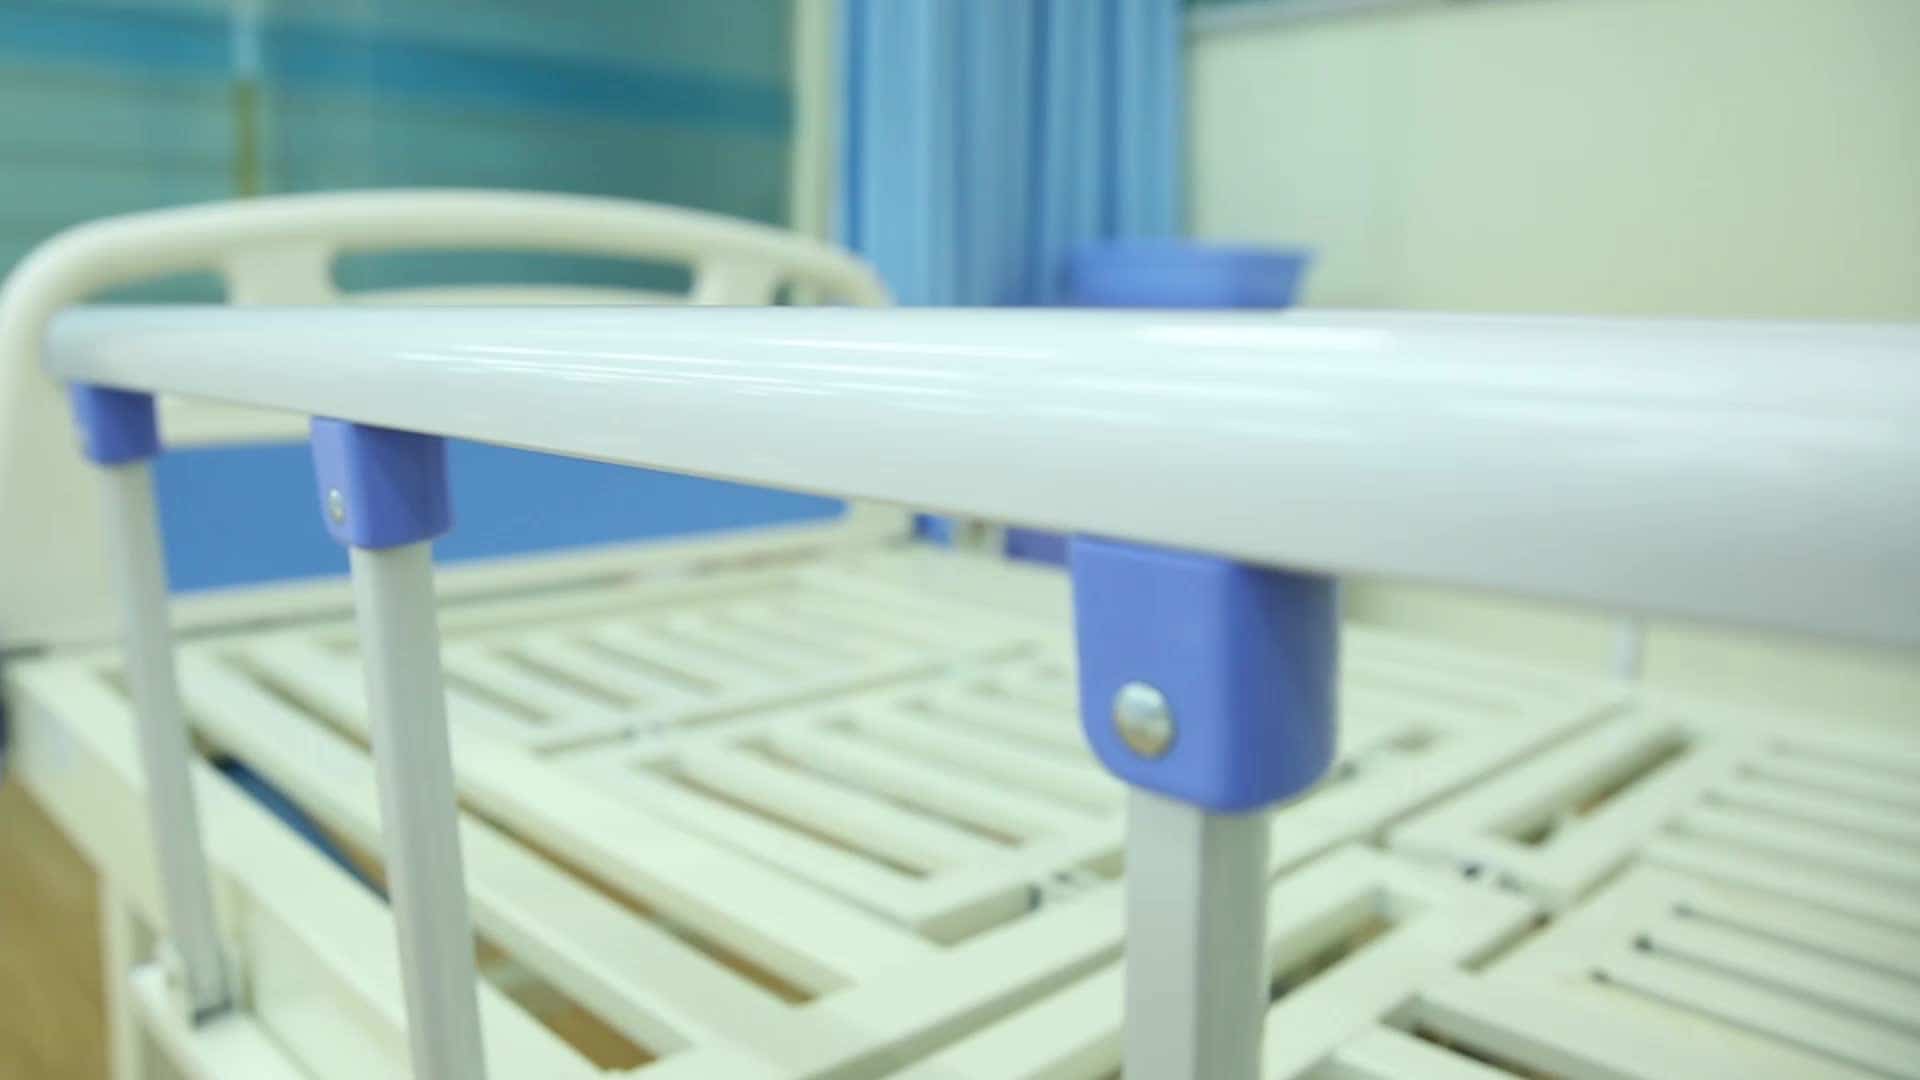 سرير طبي يدوي؛ قابل للطي مقاوم حديث سهل النقل